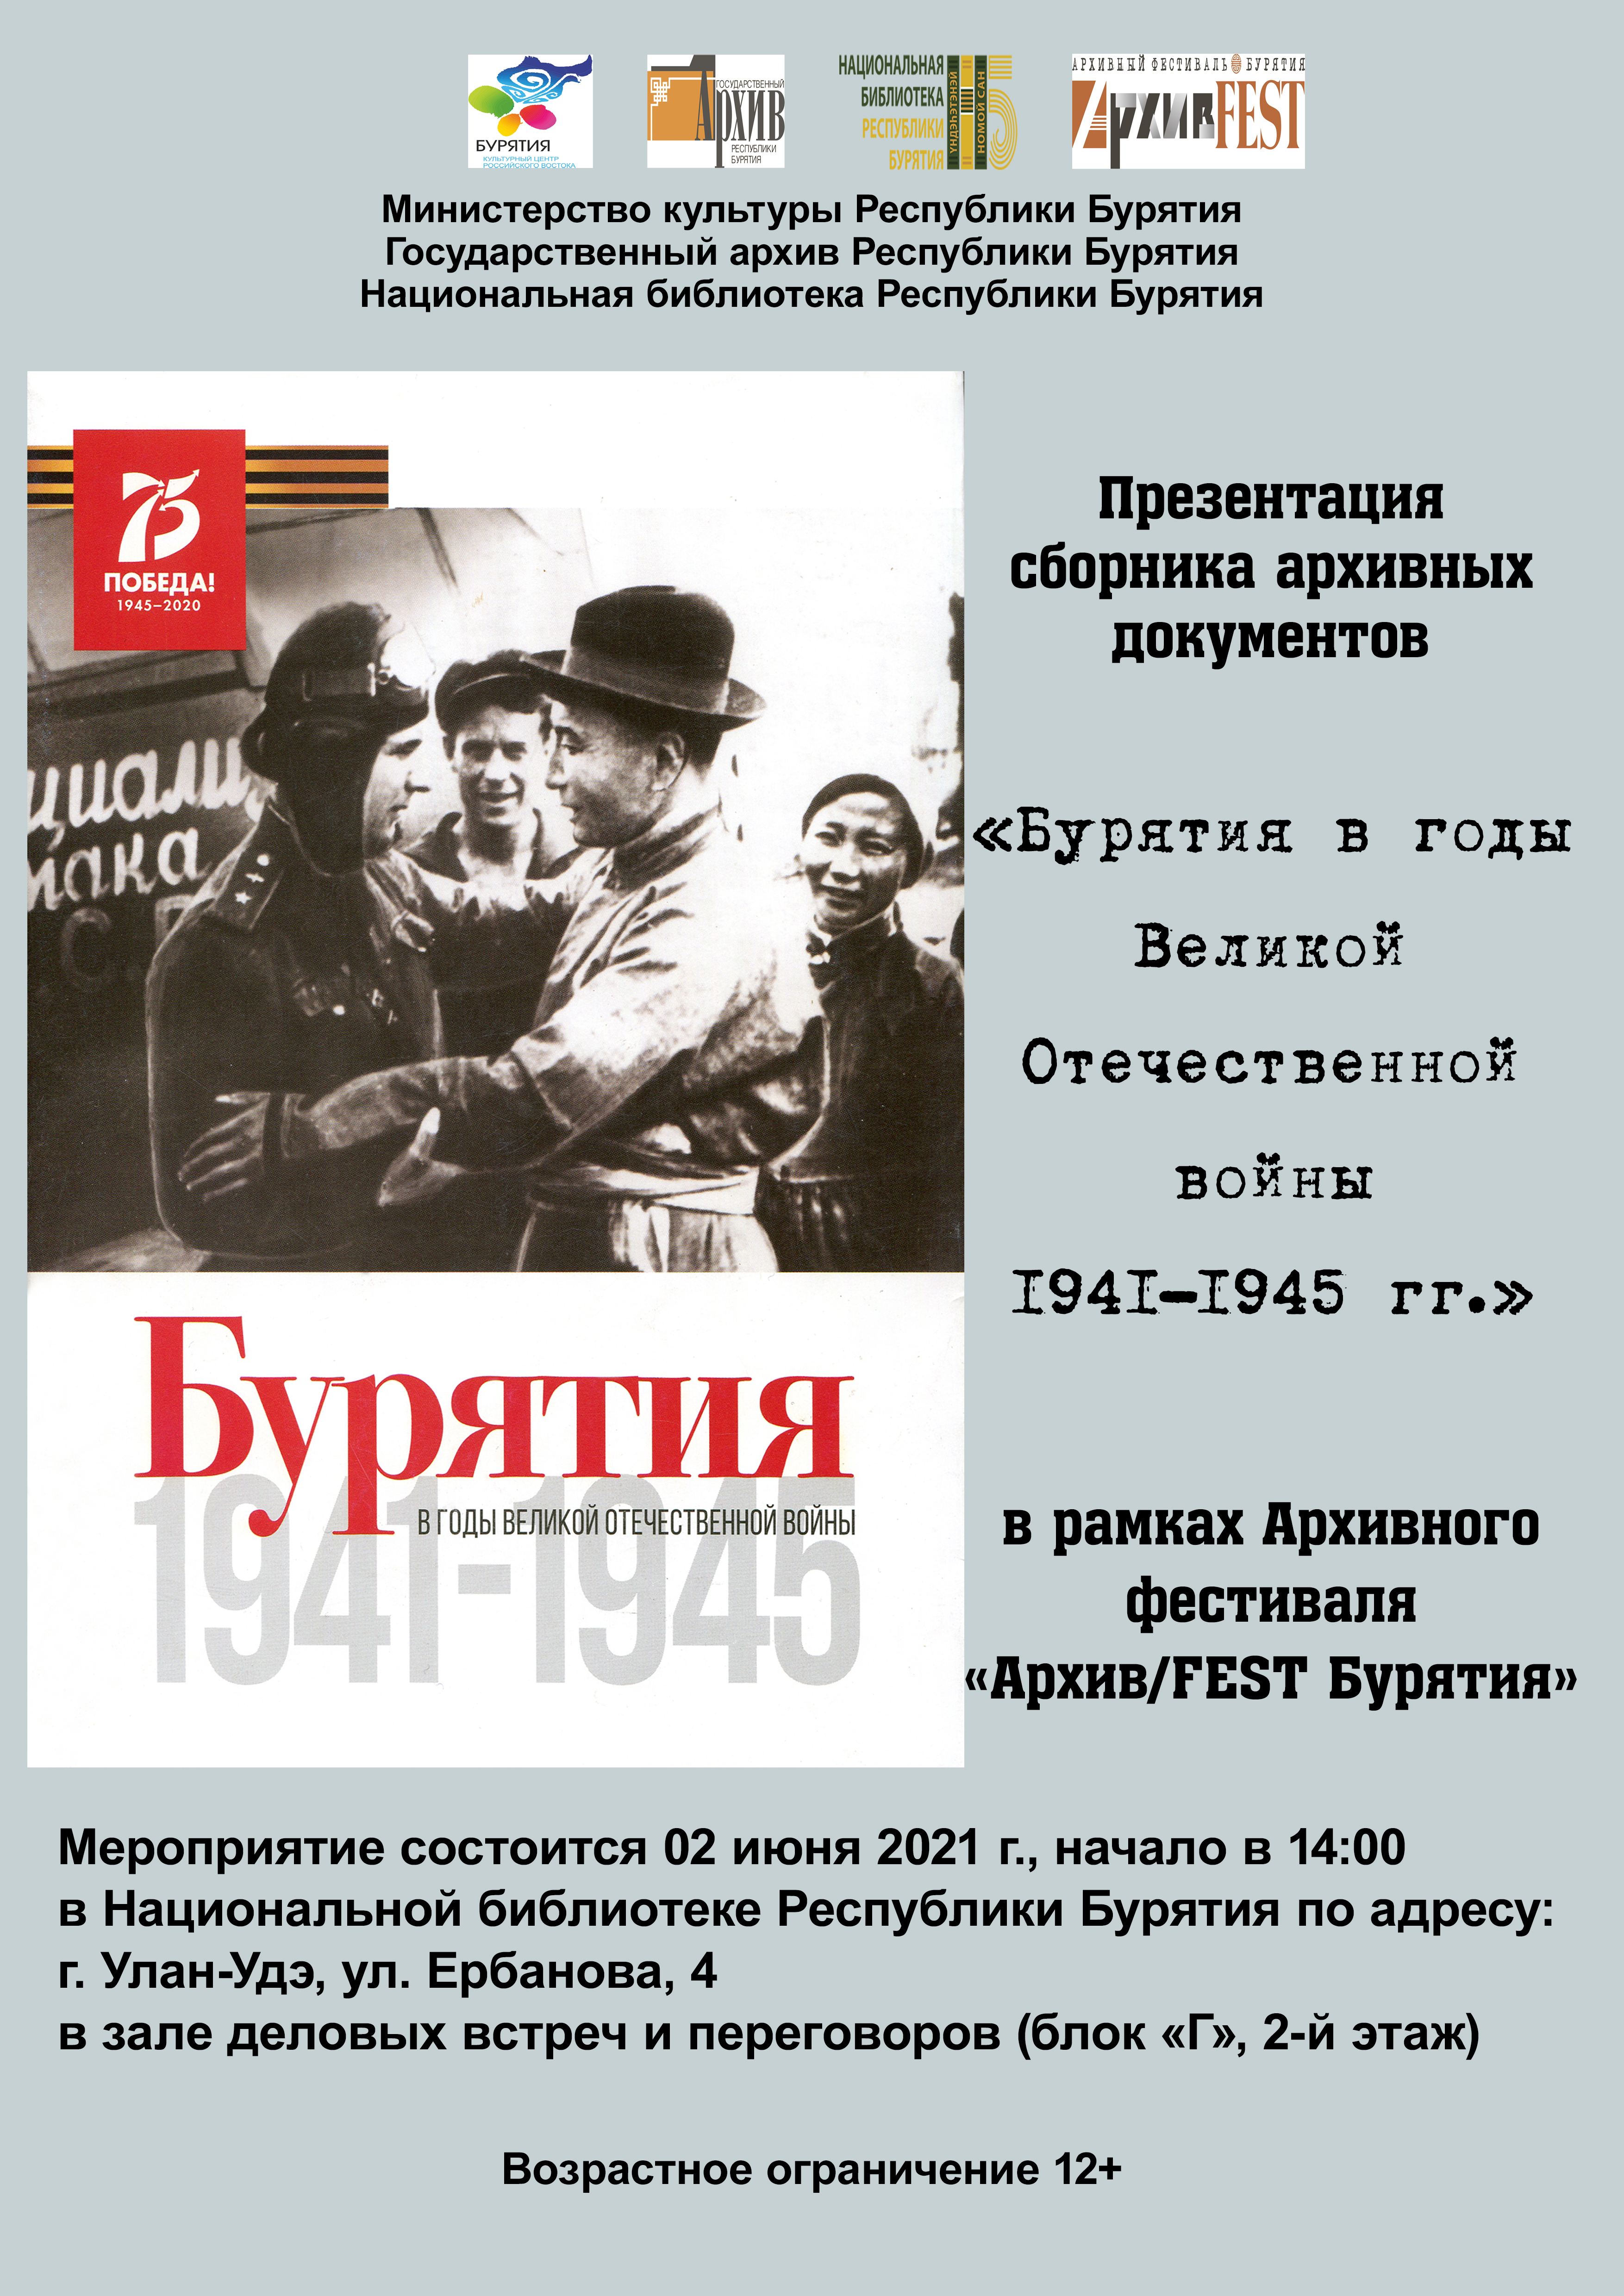 02 июня 2021 г. состоится презентация двух томов сборника архивных документов  «Бурятия в годы Великой Отечественной войны 1941-1945 гг.»